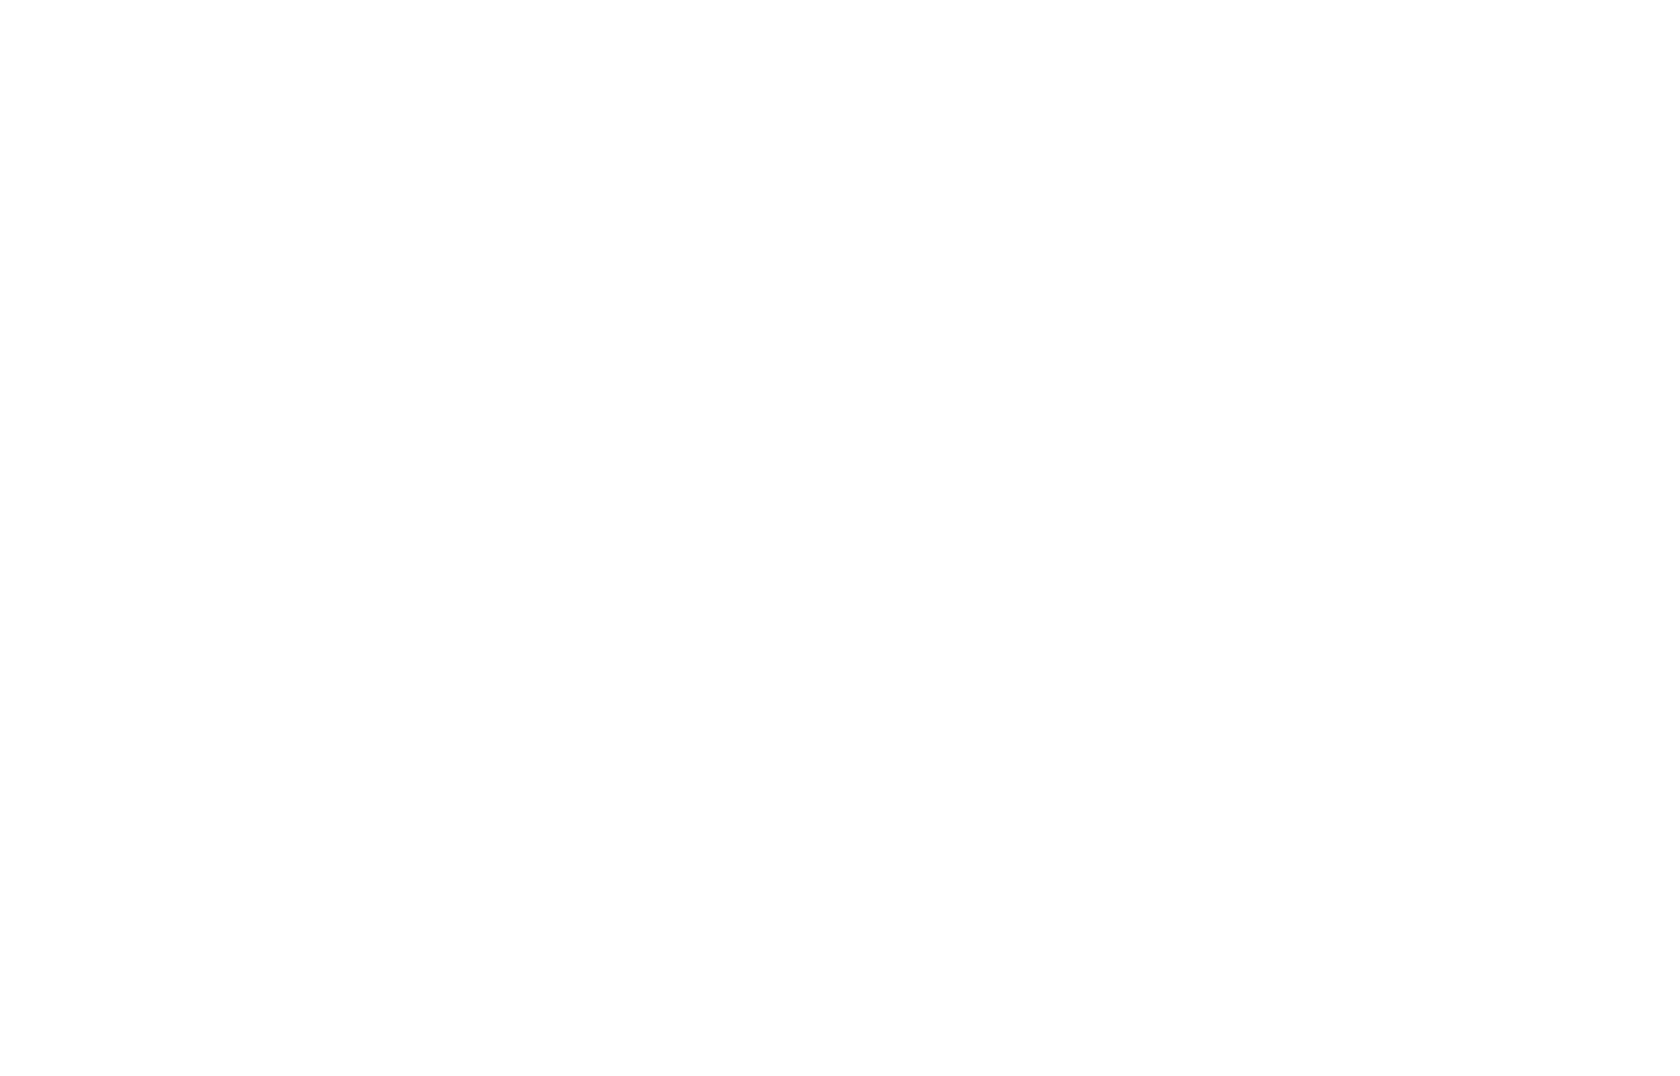 Логотип для рыбы Океан ТРК, логотип с изображением продукта, 1 рыба - вид сверху | Джекил и Хайд